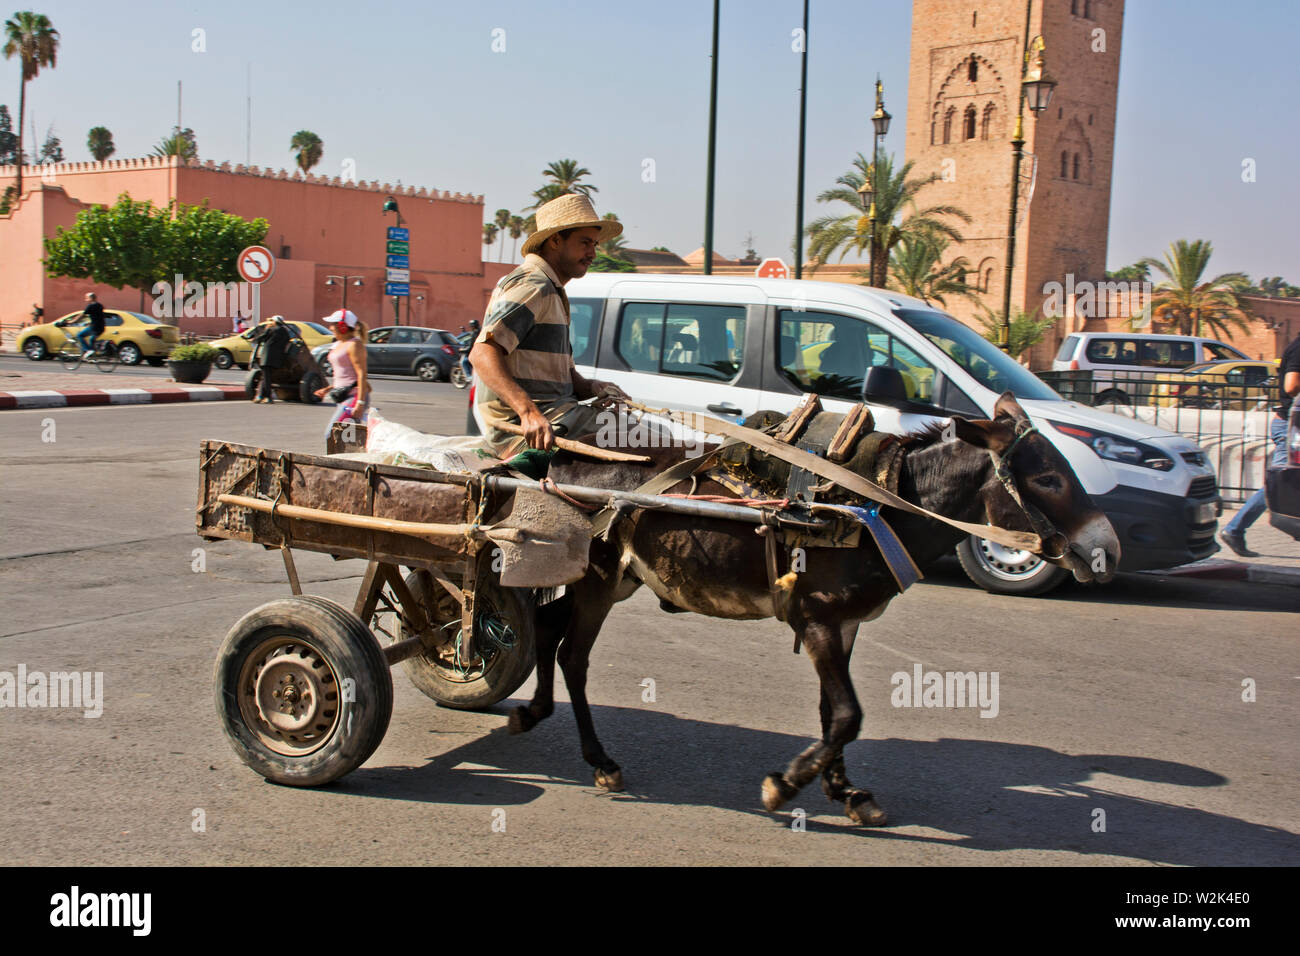 Esel und Warenkorb in den Straßen von Marrakesch, Marokko arbeiten Stockfoto